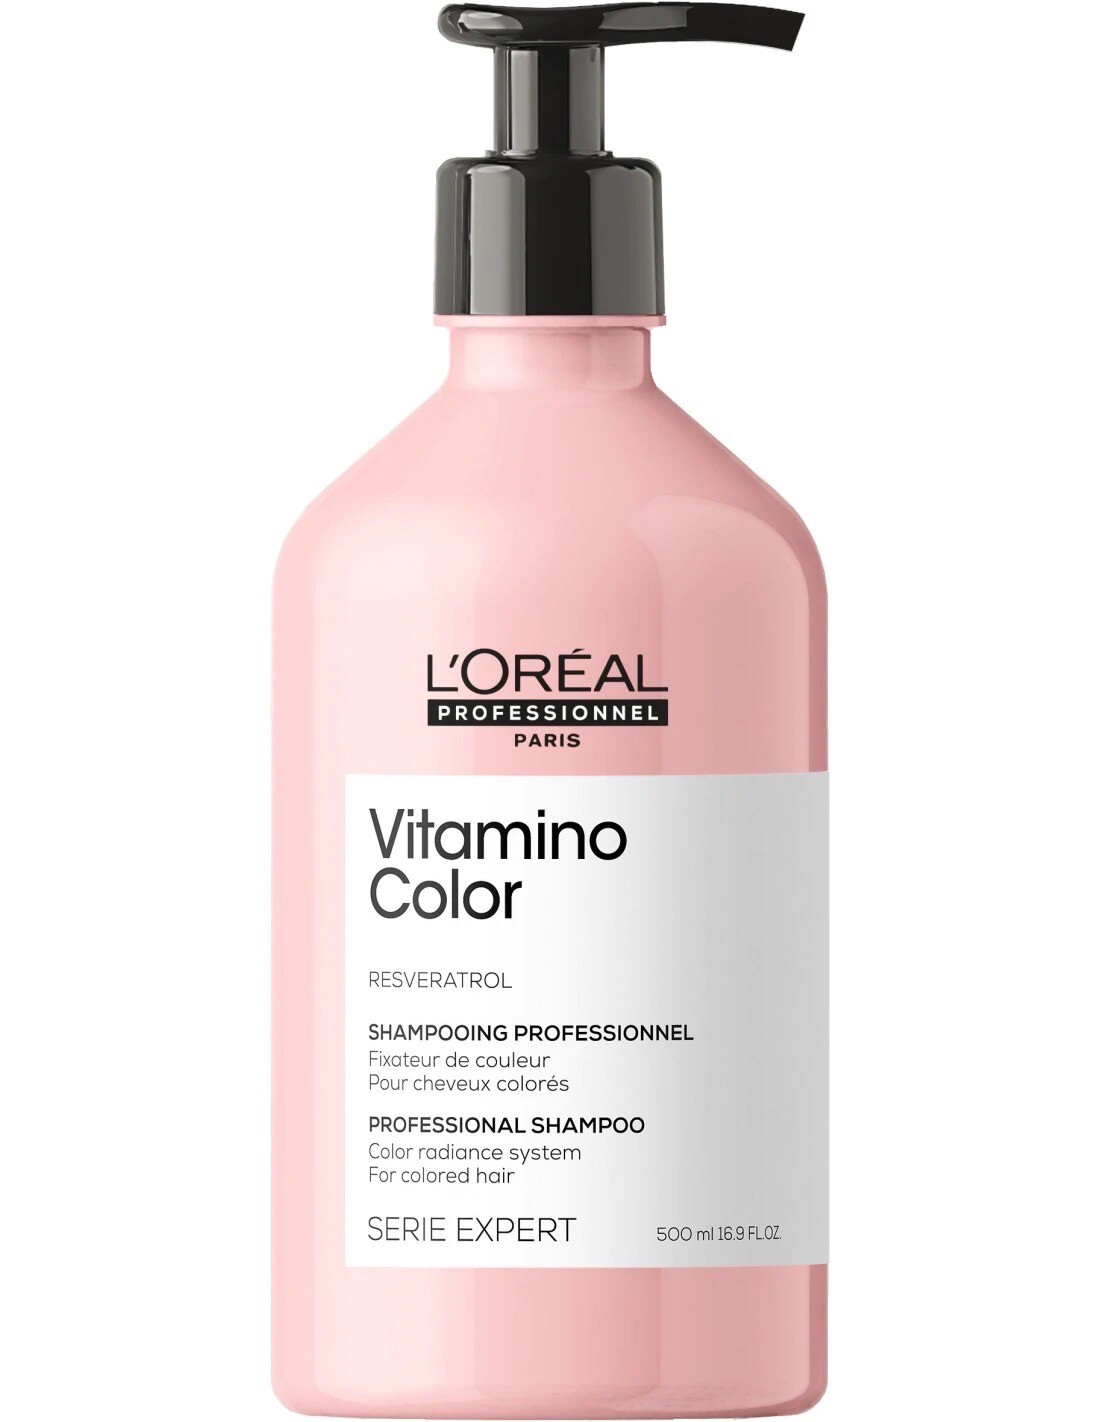 L'Oréal
VITAMINO COLOR
Vitamino Color Shampoo - 500 ml